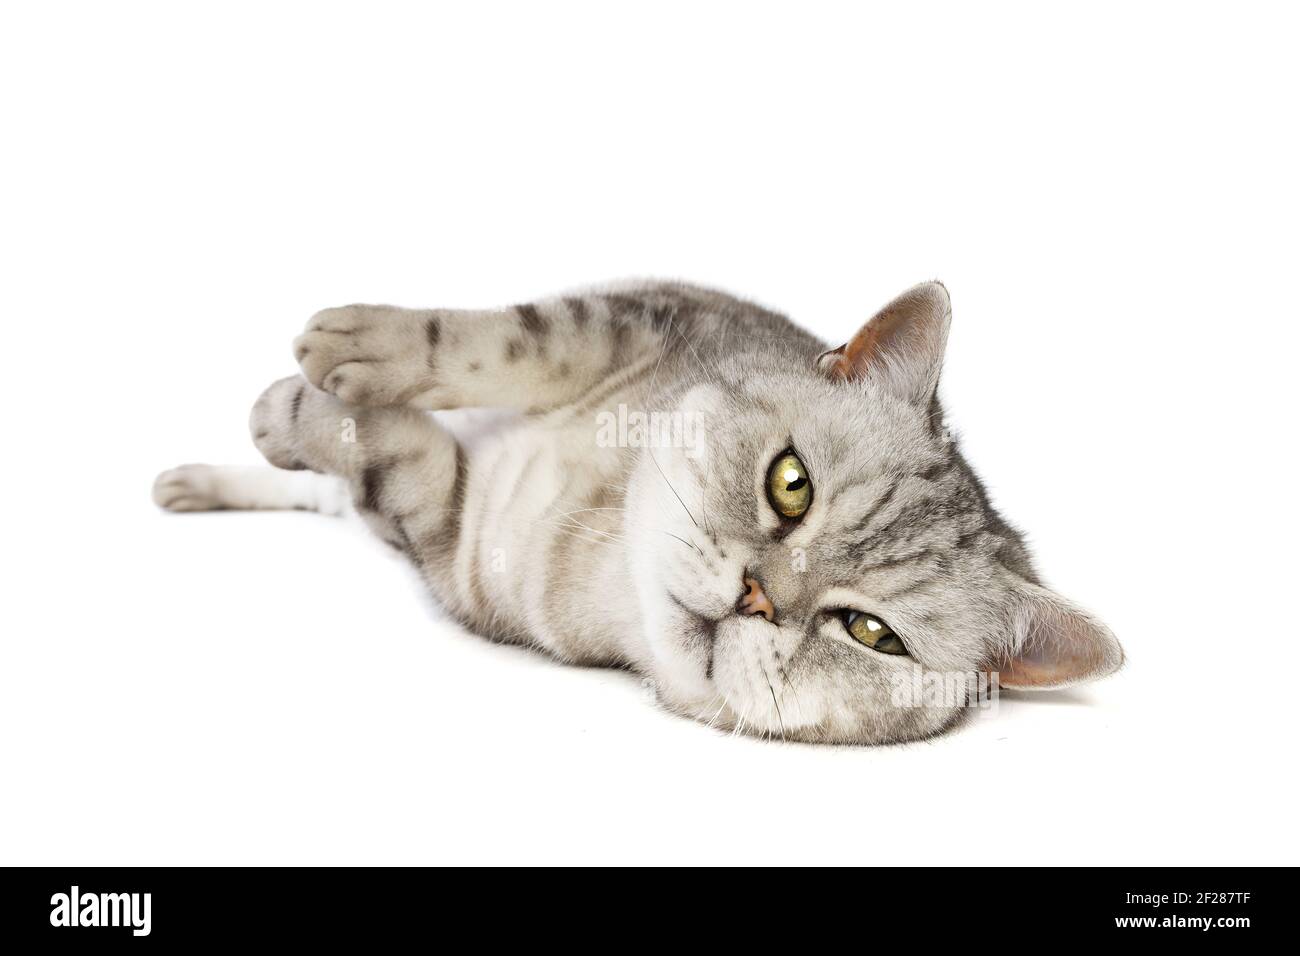 British Shorthaired cat Stock Photo